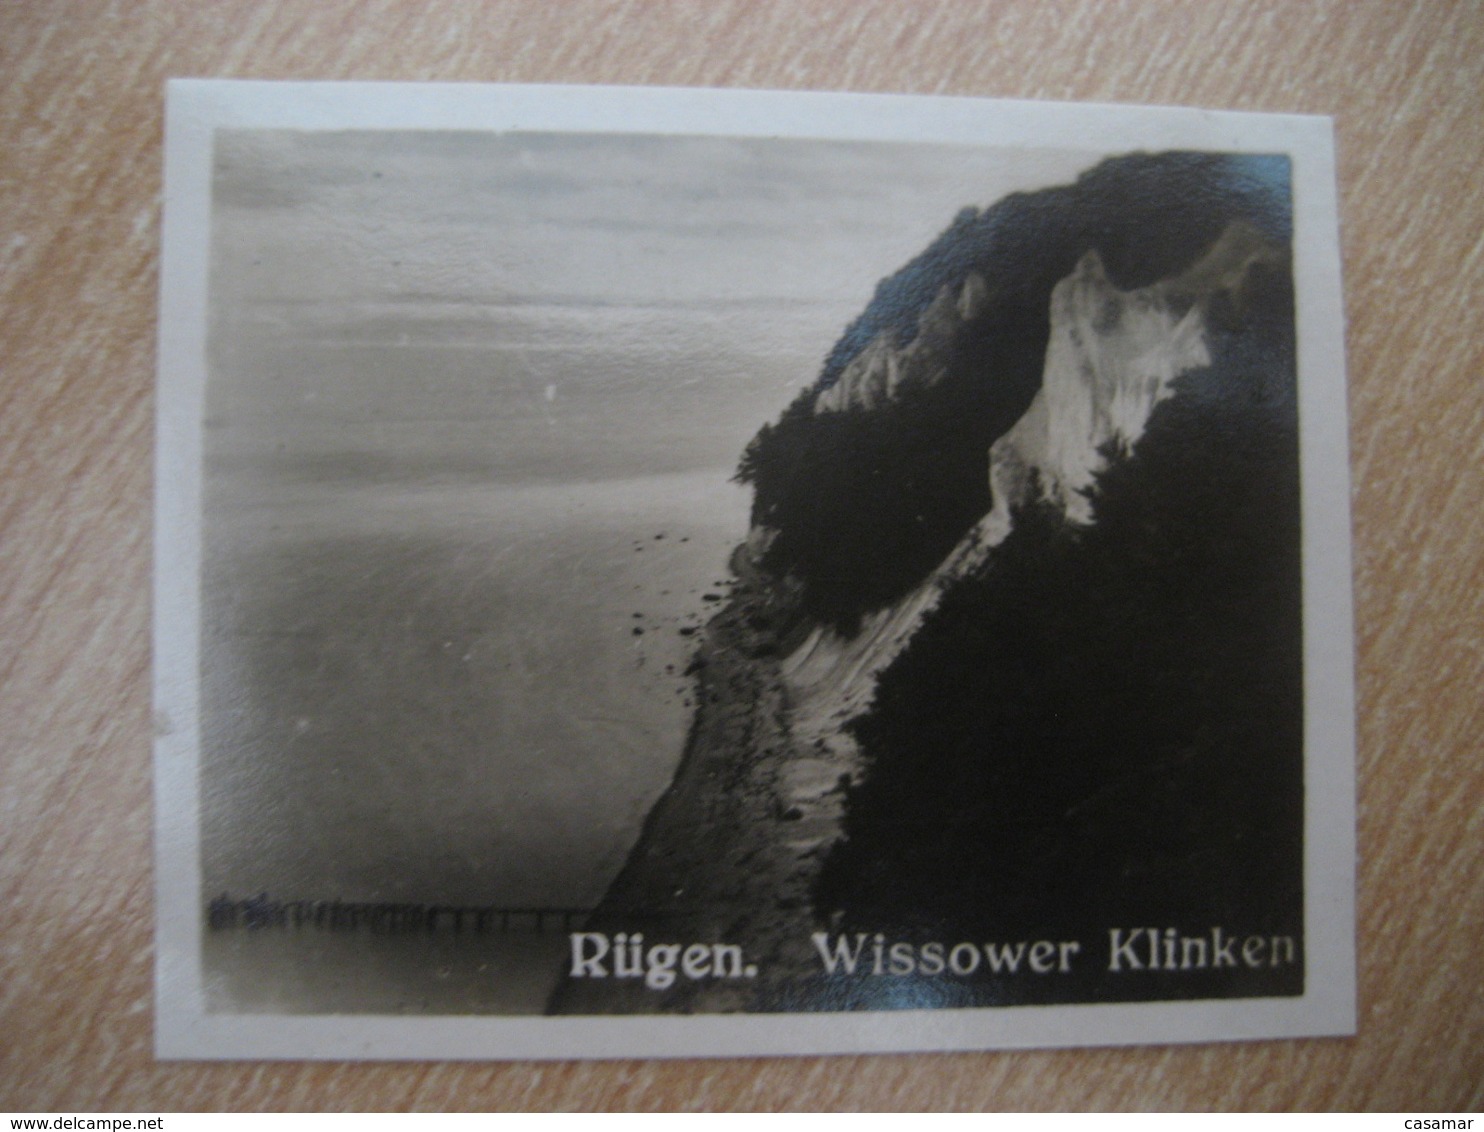 RUGEN Wissower Klinken Bilder Card Photo Photography (4x5,2cm) Deutsche Kuste Coast GERMANY 30s Tobacco - Non Classificati